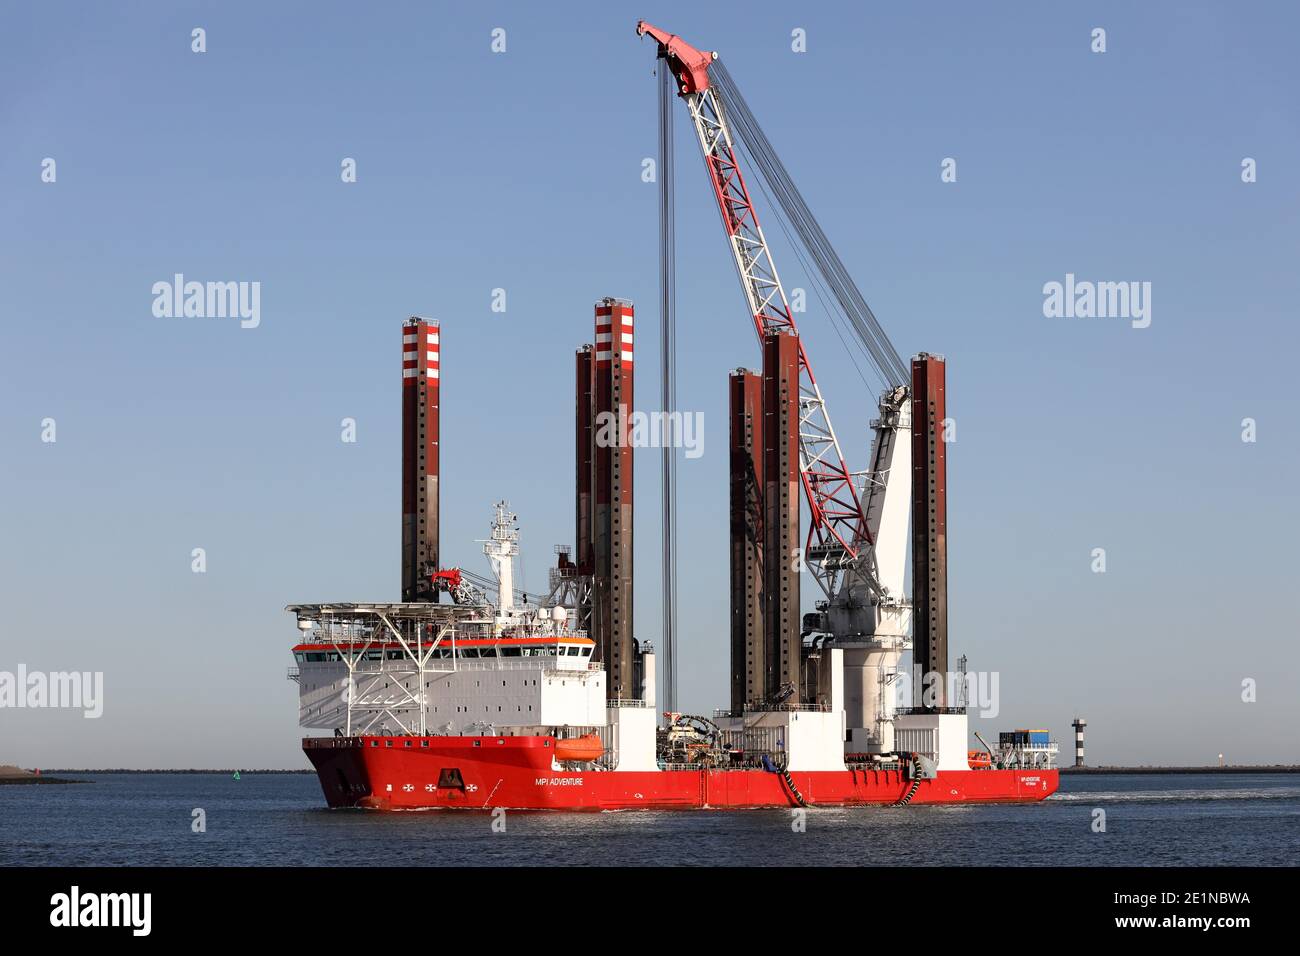 Das Windkraft-Installationsschiff MPI Adventure wird am 18. September 2020 den Hafen von Rotterdam erreichen. Stockfoto